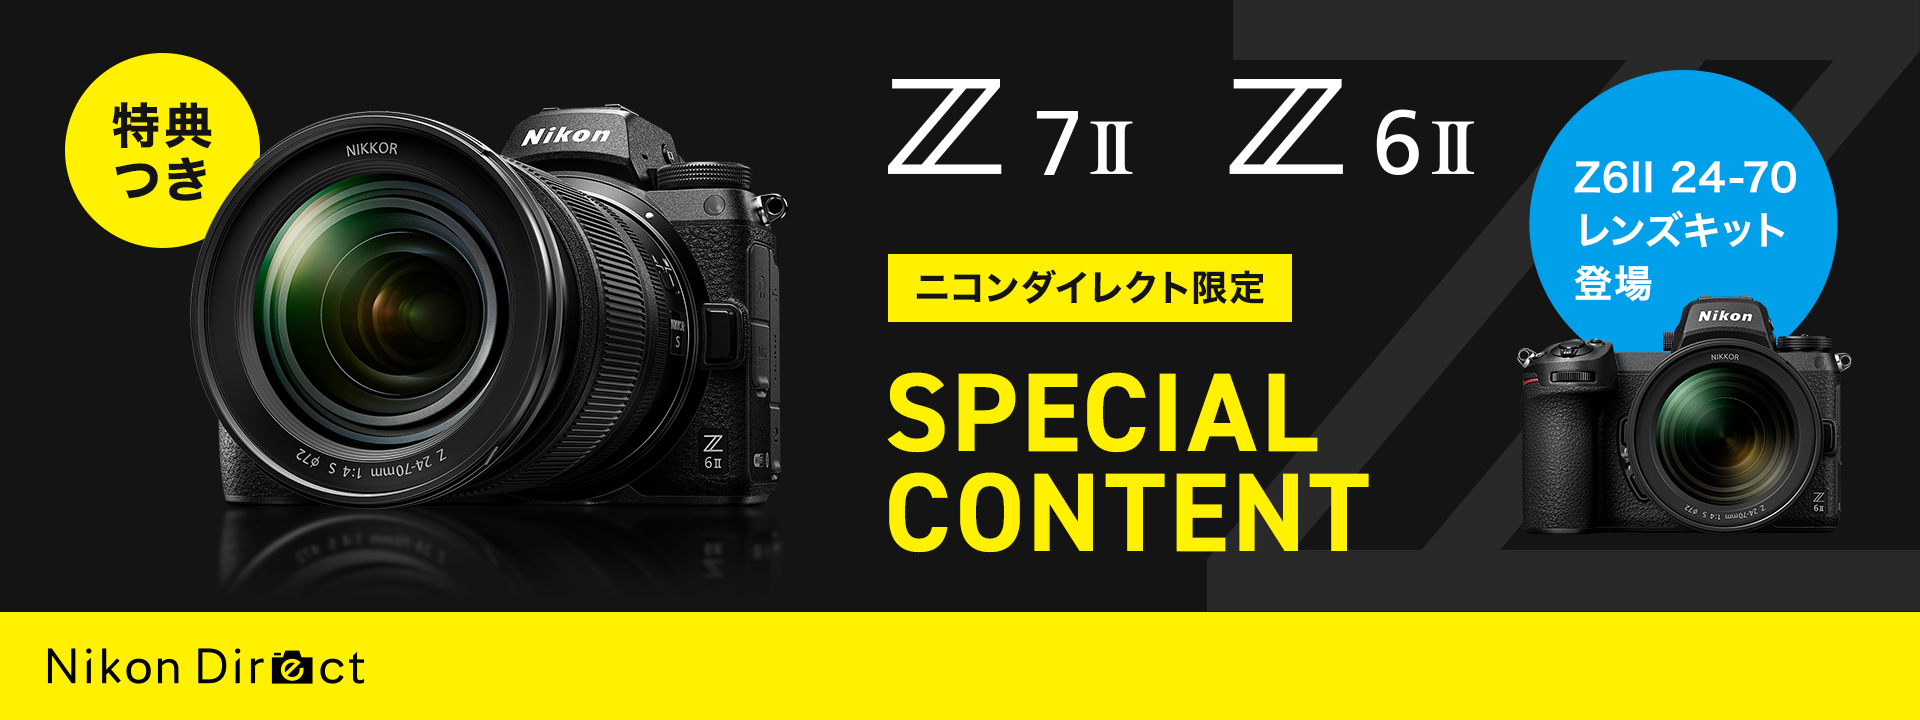 Z 6II - 概要 | ミラーレスカメラ | ニコンイメージング